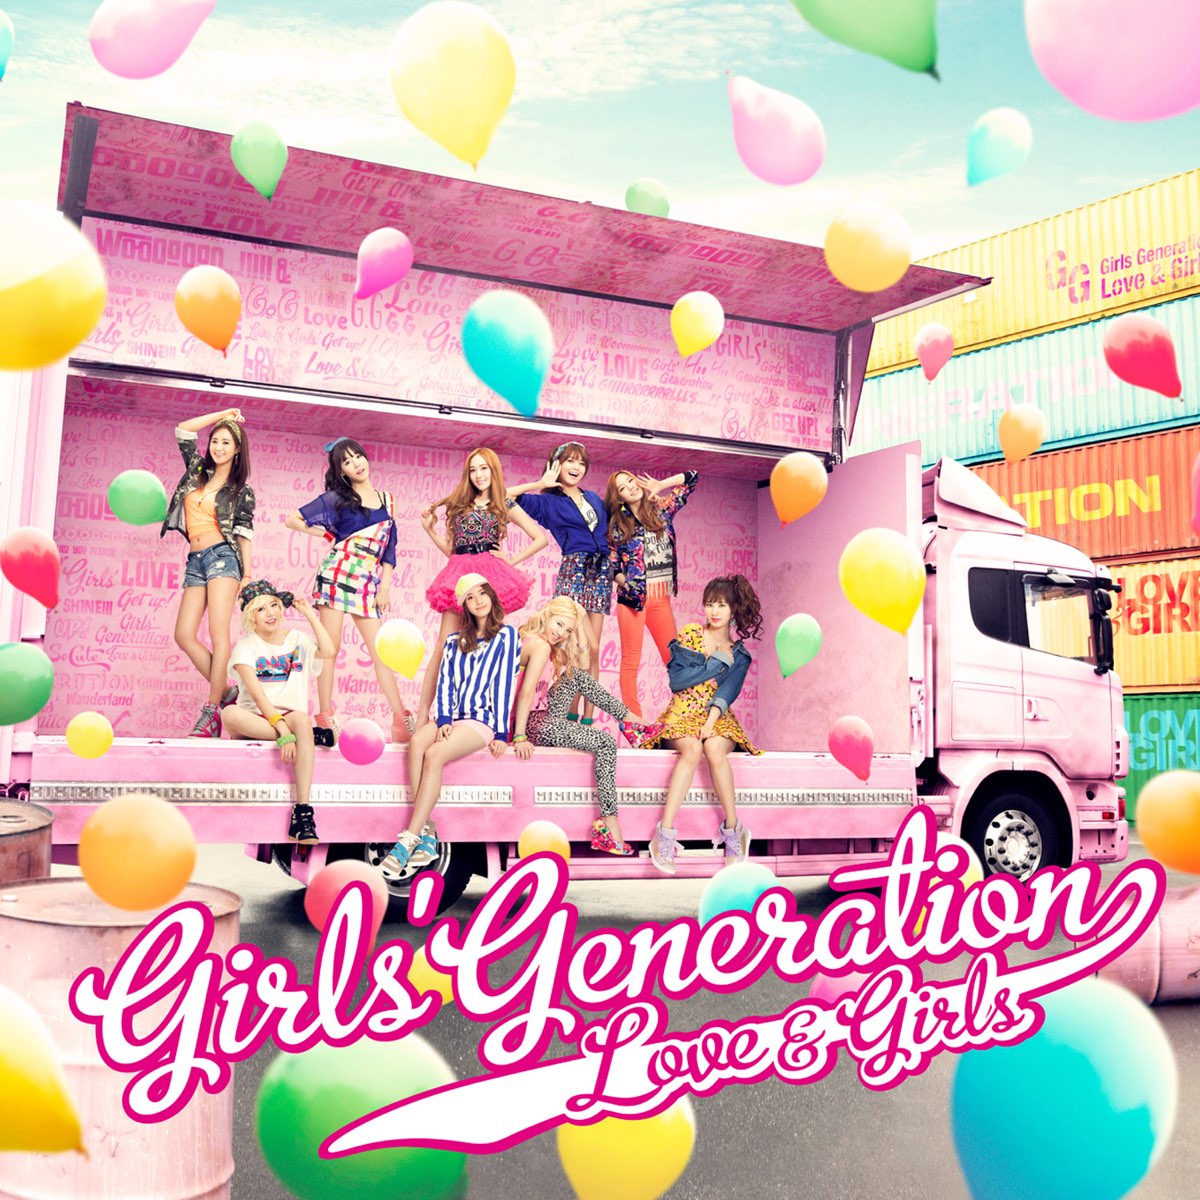 Girls&#039; Generation Love &amp; Girls cover artwork